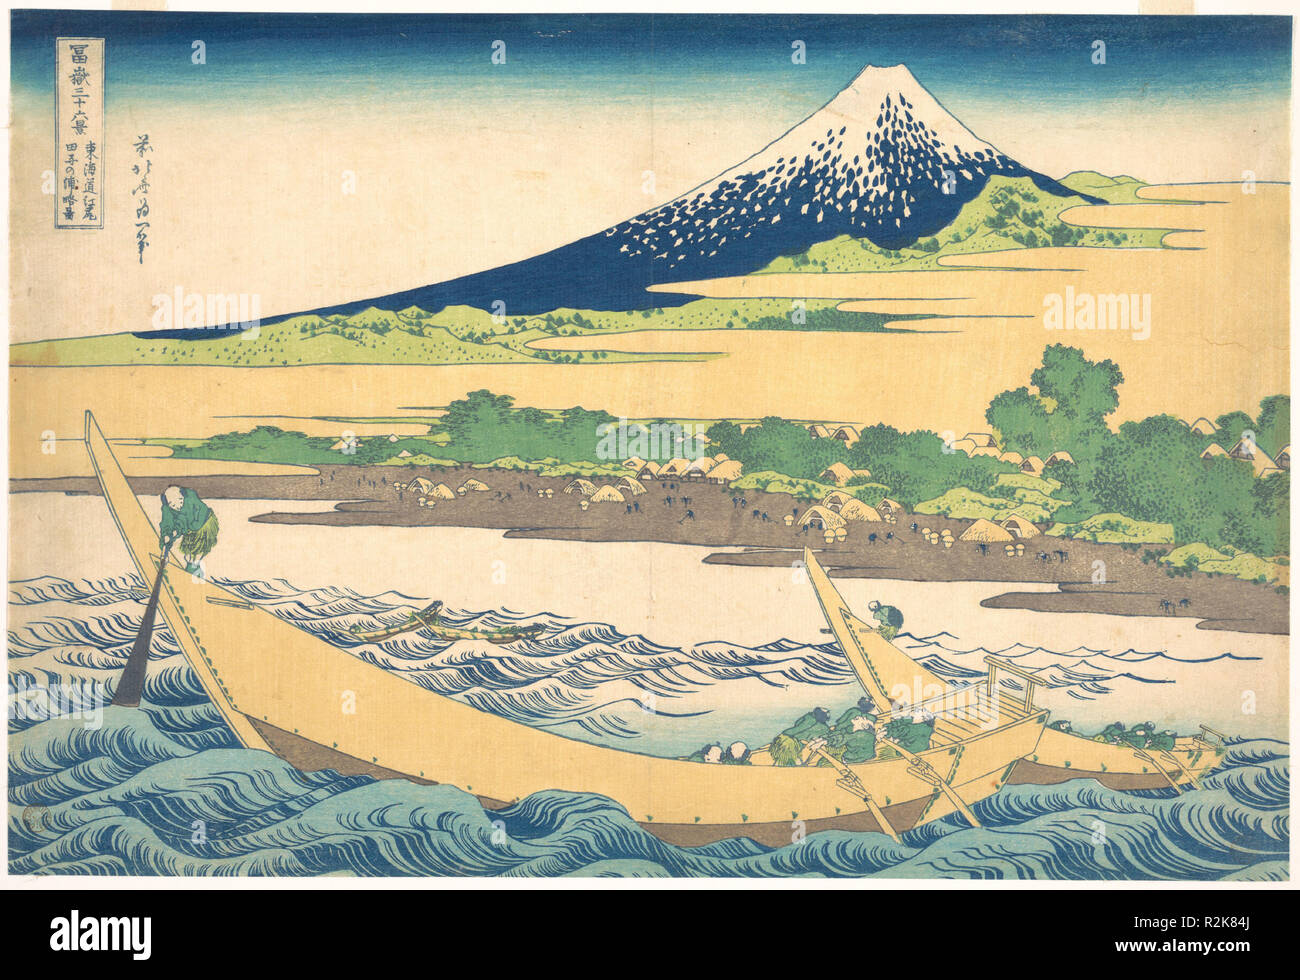 2 Bay in der Nähe von ejiri der Tokaido (Tokaido ejiri 1 2 Keine ura ryaku zu), aus der Serie 36 Ansichten des Berges Fuji (Fugaku sanjurokkei). Künstler: Katsushika Hokusai (Japanisch, Tokyo (EDO) 1760-1849 Tokyo (EDO)). Kultur: Japan. Abmessungen: 9 3/4 x 14 3/8 in. (24,8 x 36,5 cm). Datum: Ca. 1830-32. Männer kämpfen, um ihre dschunken durch die starken Strömungen der 2 Bay zu lenken, während ein Fischer sein Netz wirft in der turbulenten Meer. Die geschwungene Form des Berges, Echo, dass der Dschunken, als Gegengewicht zu den Vordergrund Szene dient. Museum: Metropolitan Museum of Art, New York, USA. Stockfoto